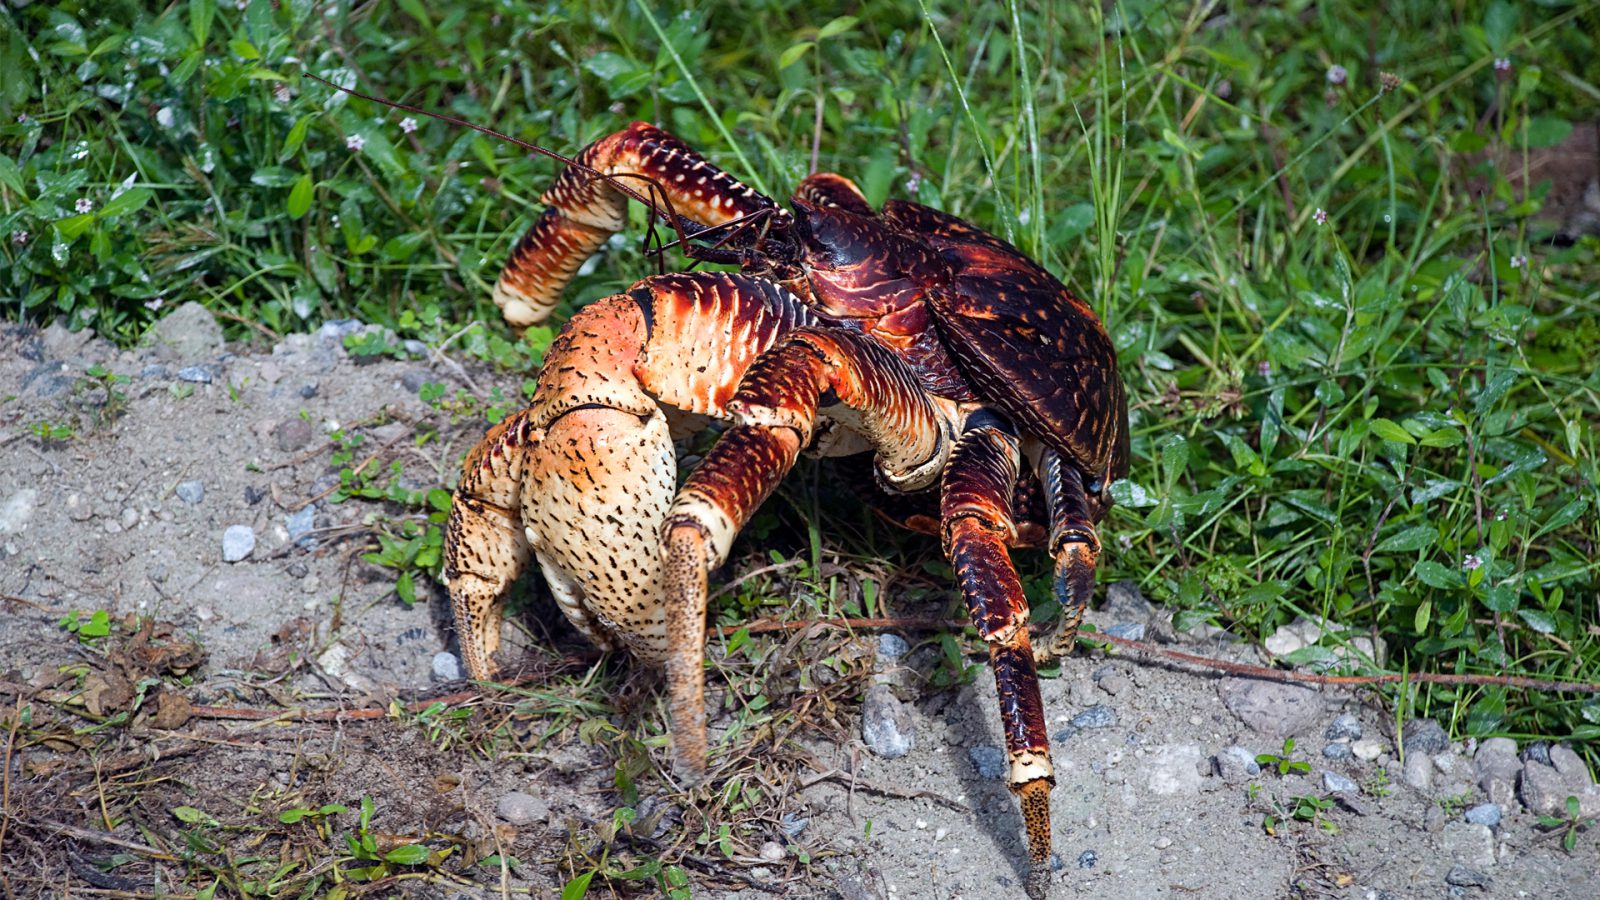 Coconut Crab: Το μεγαλύτερο είδος καβουριού στον κόσμο! (βίντεο)